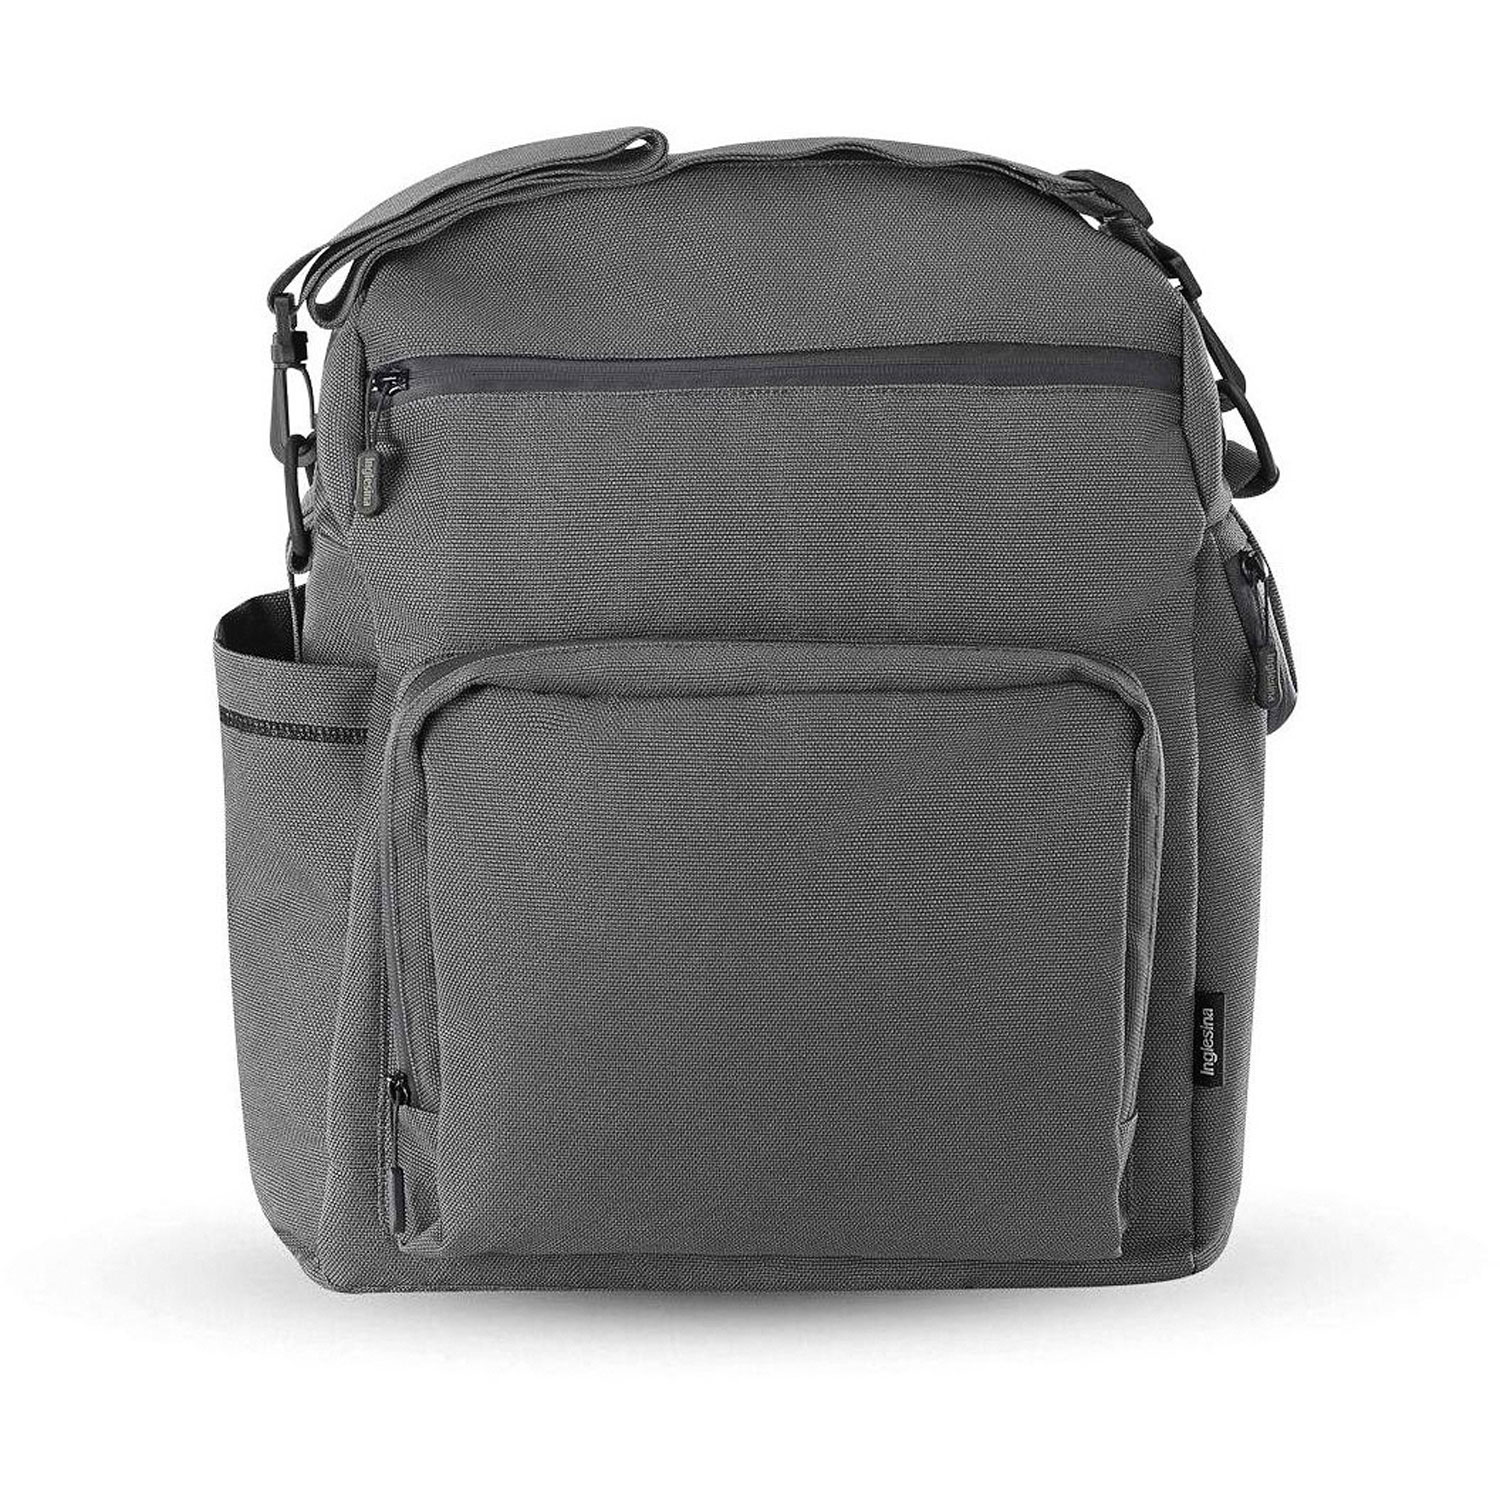 Сумка-рюкзак для коляски ADVENTURE BAG, цвет CHARCOAL GREY (2021) Inglesina inglesina сумка рюкзак для коляски back bag aptica